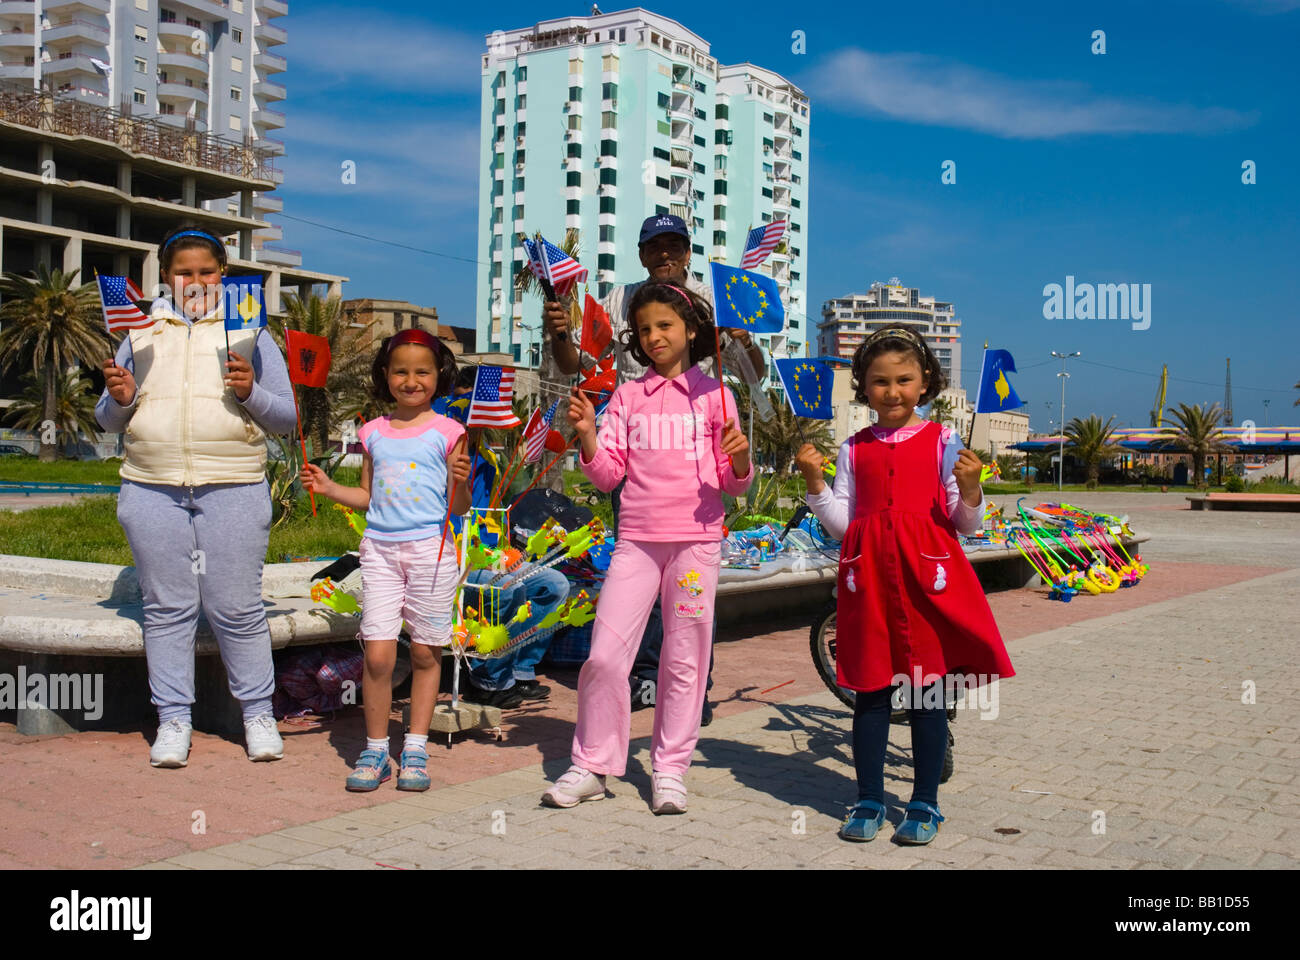 Les enfants kosovars albanais agitant des drapeaux américains et de l'UE à Durres Albanie Europe Banque D'Images